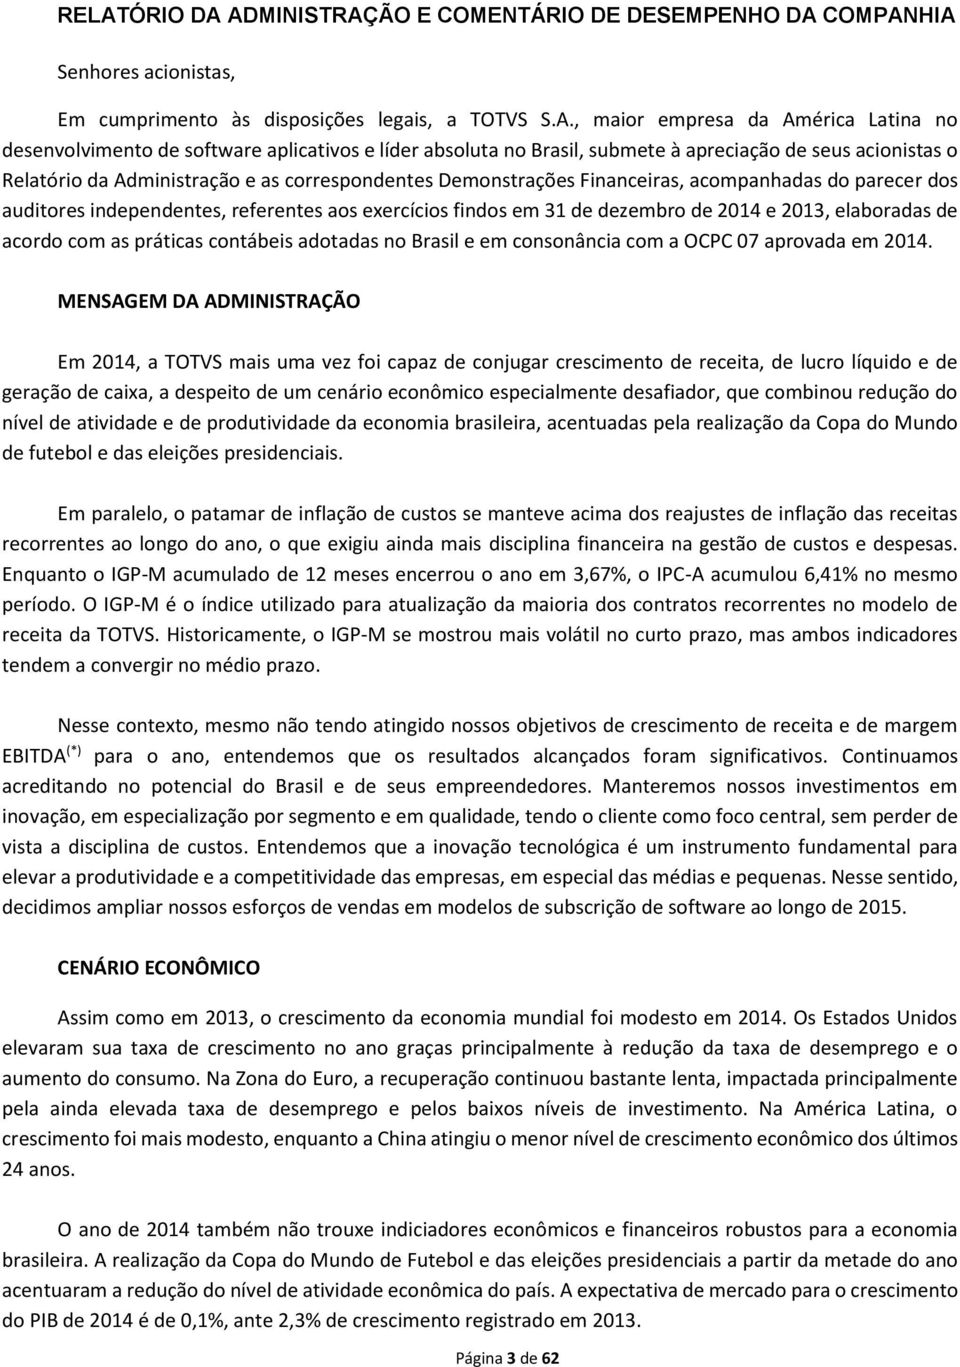 auditores independentes, referentes aos exercícios findos em 31 de dezembro de 2014 e 2013, elaboradas de acordo com as práticas contábeis adotadas no Brasil e em consonância com a OCPC 07 aprovada